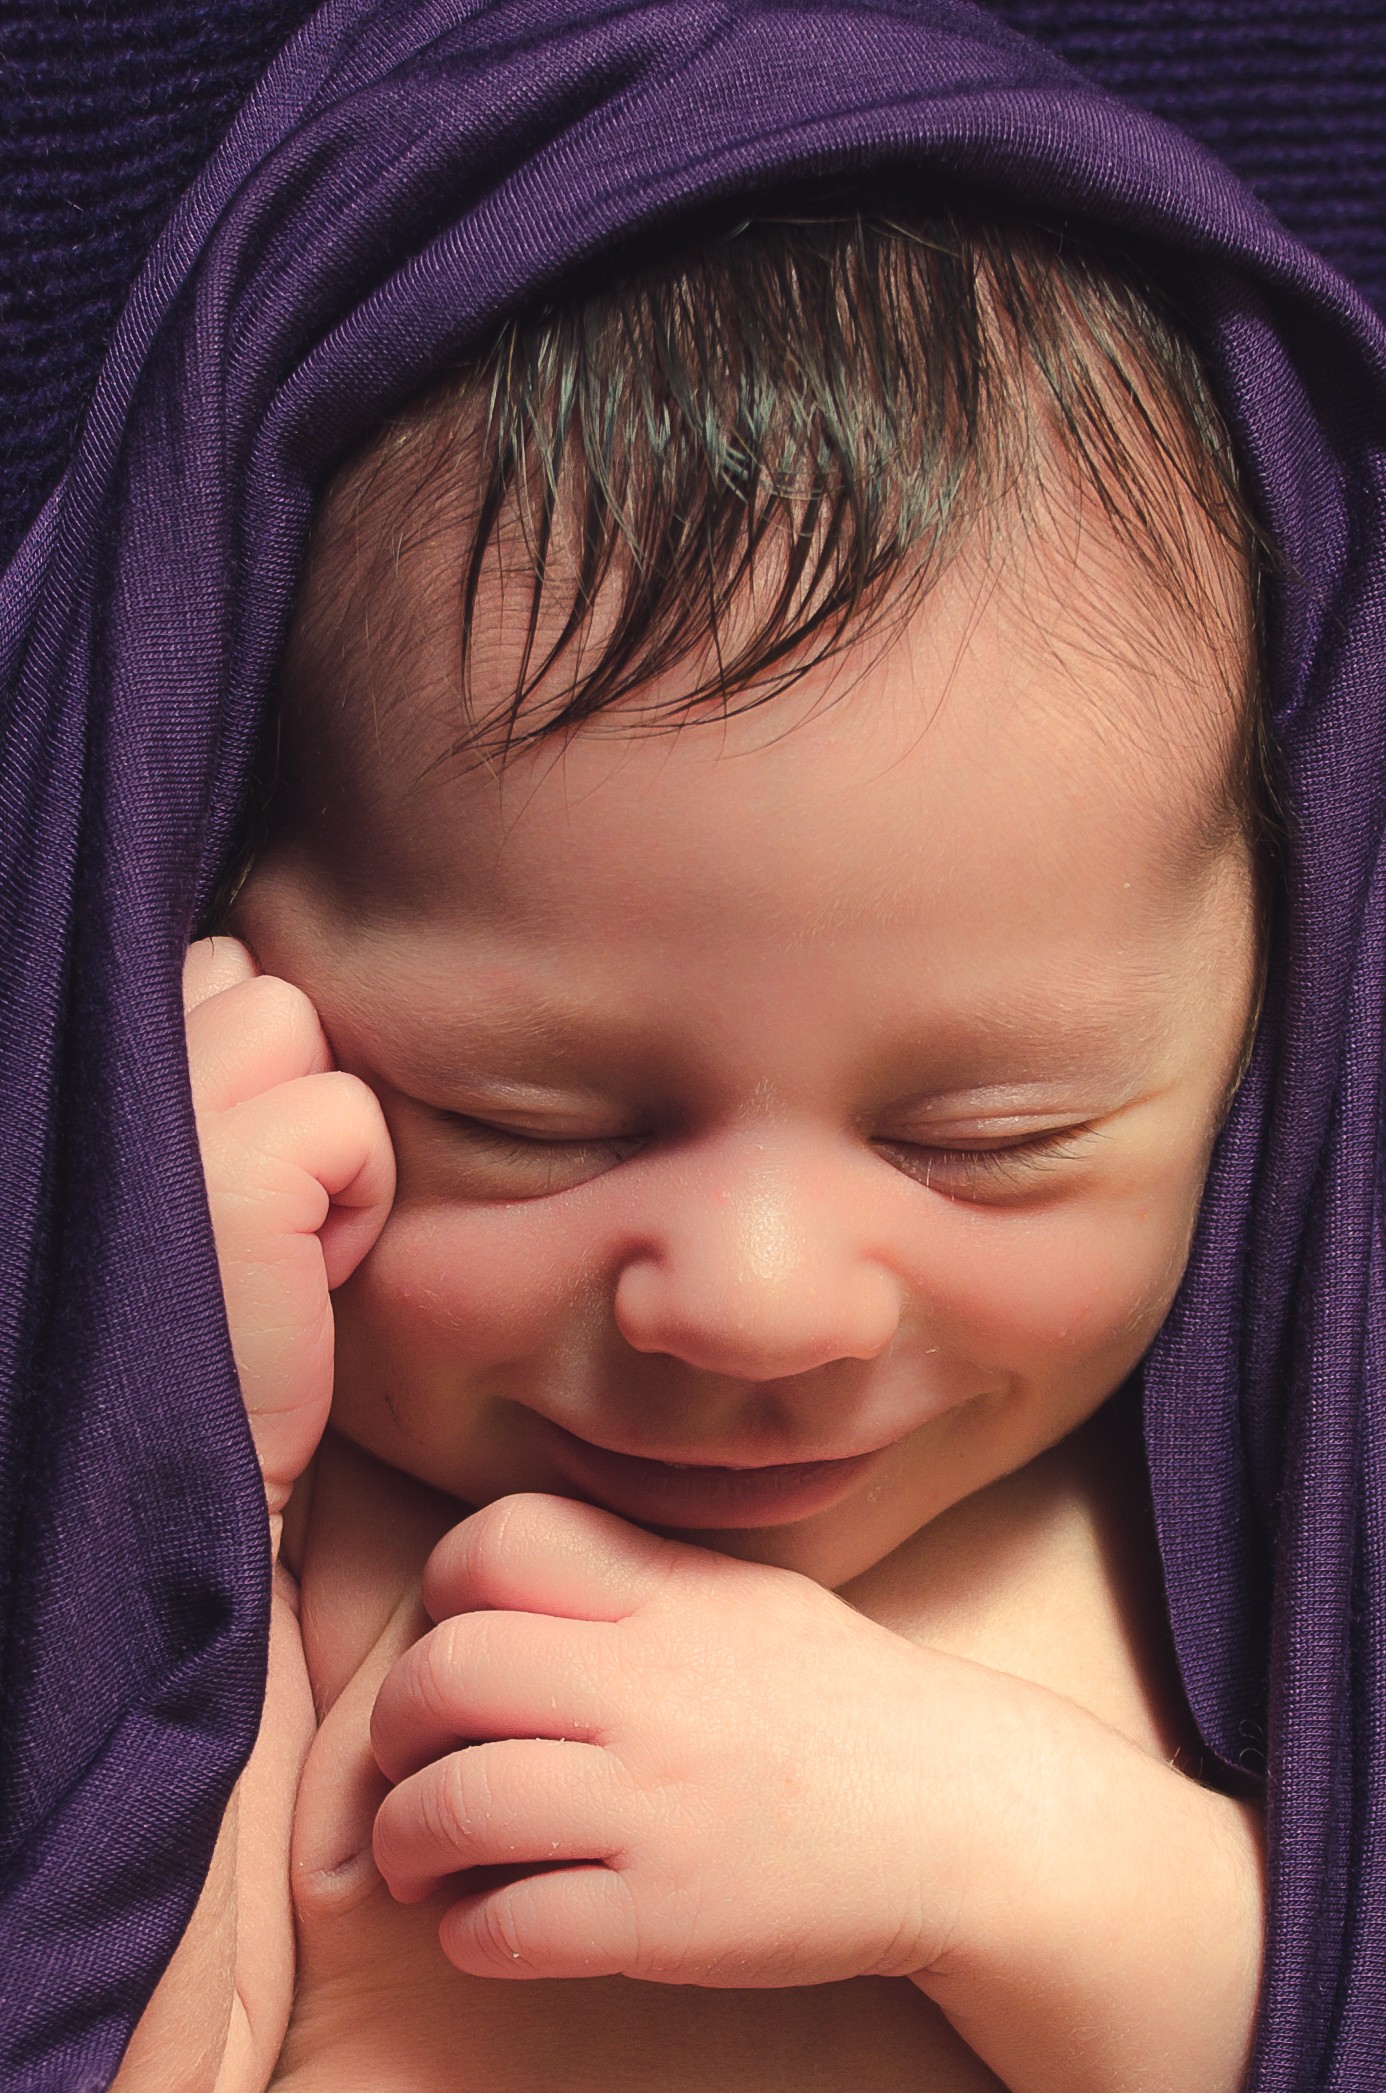 zdjęcia bedzin fotograf noeud-ania-kotula-fotografia portfolio zdjecia noworodkow sesje noworodkowe niemowlę